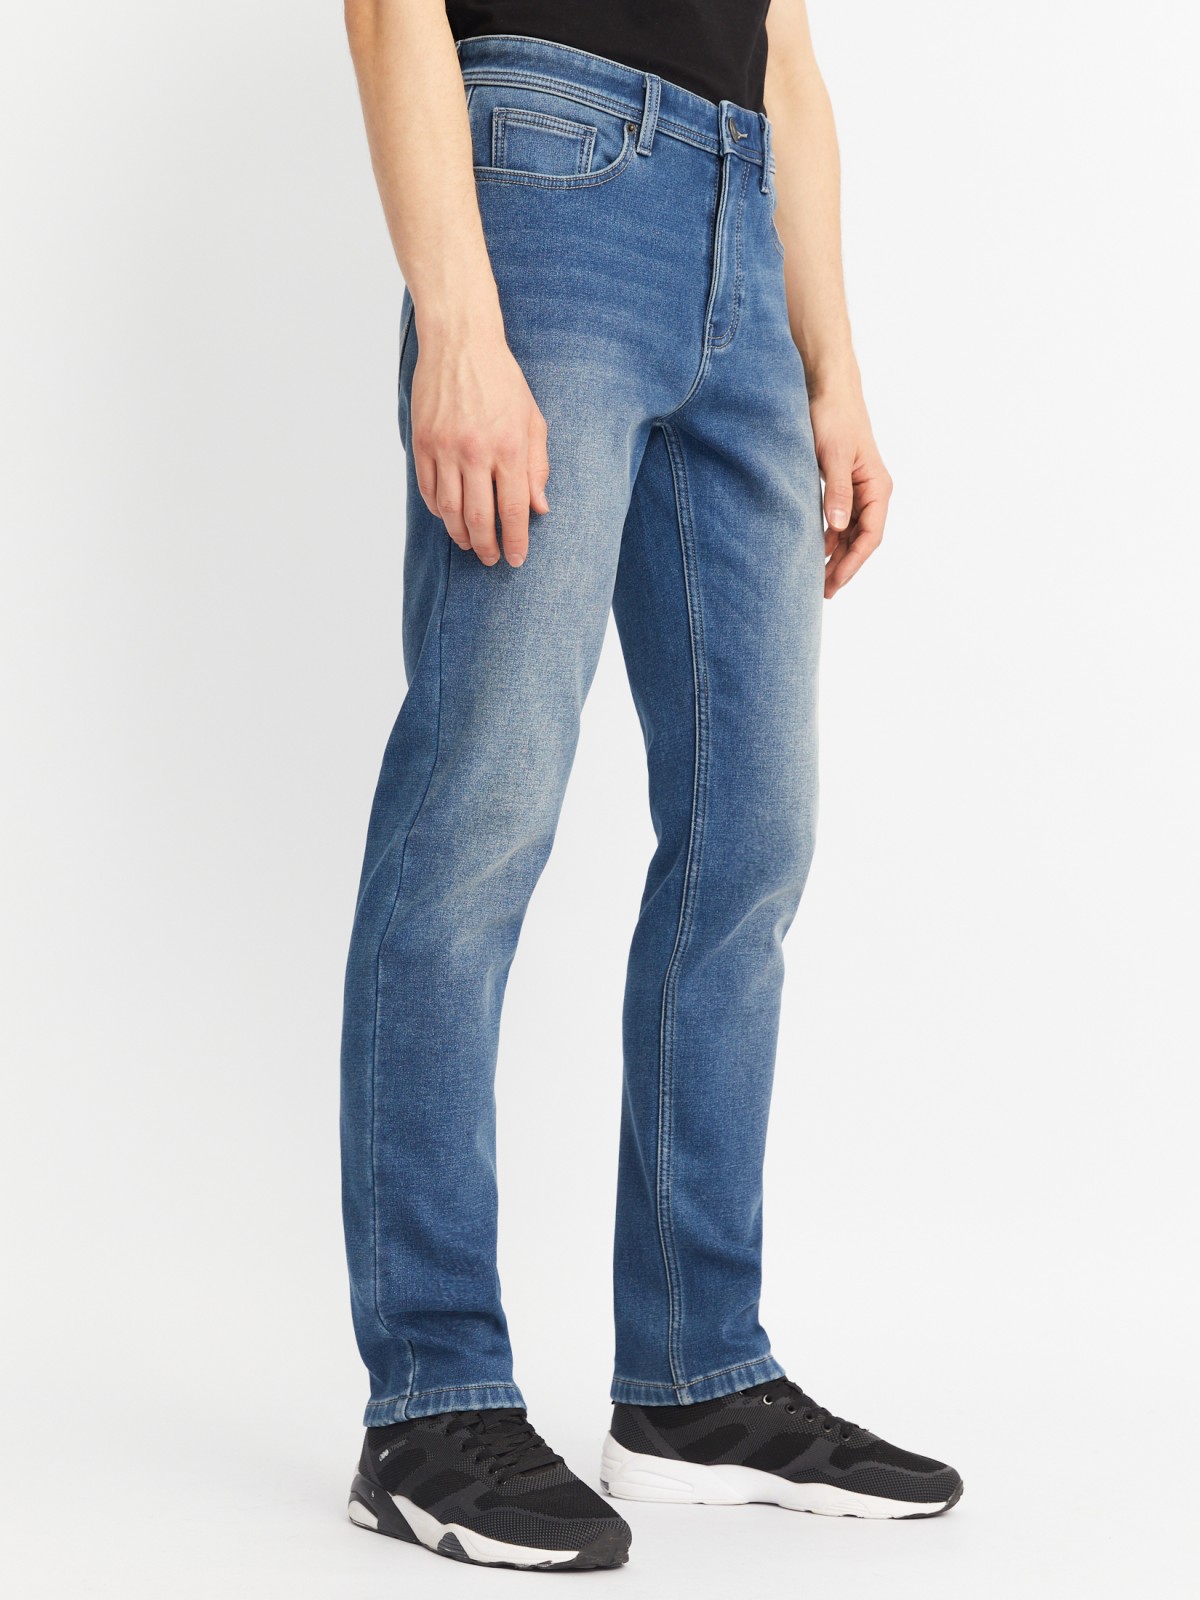 Утеплённые джинсы фасона Slim с флисом внутри